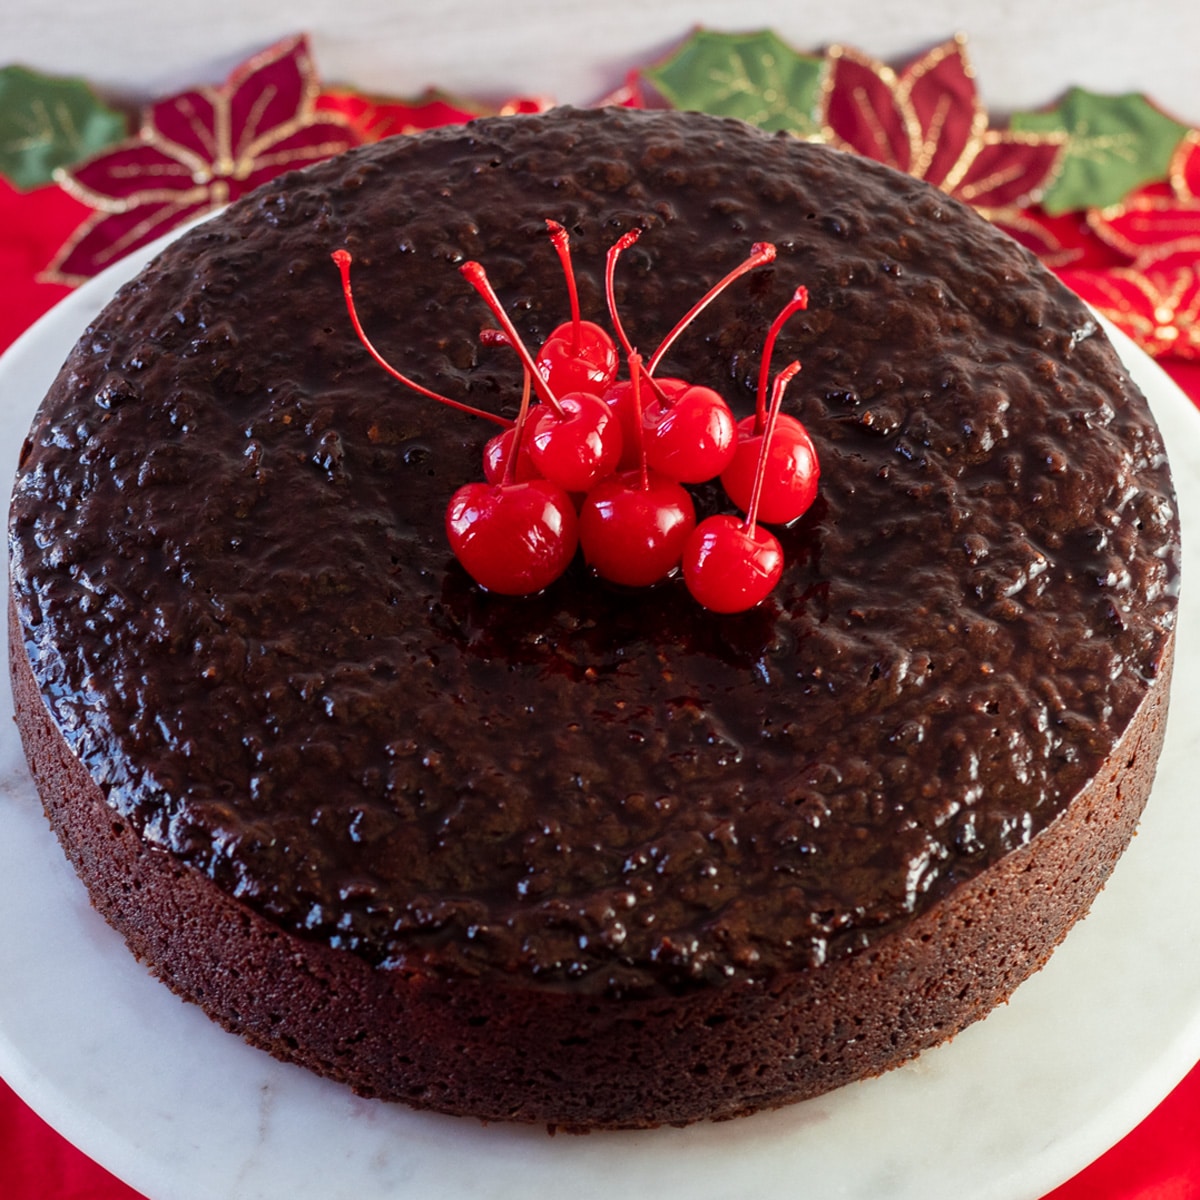 Immagine quadrata che guarda dall'alto la torta nera giamaicana, con le ciliegie sulla torta.